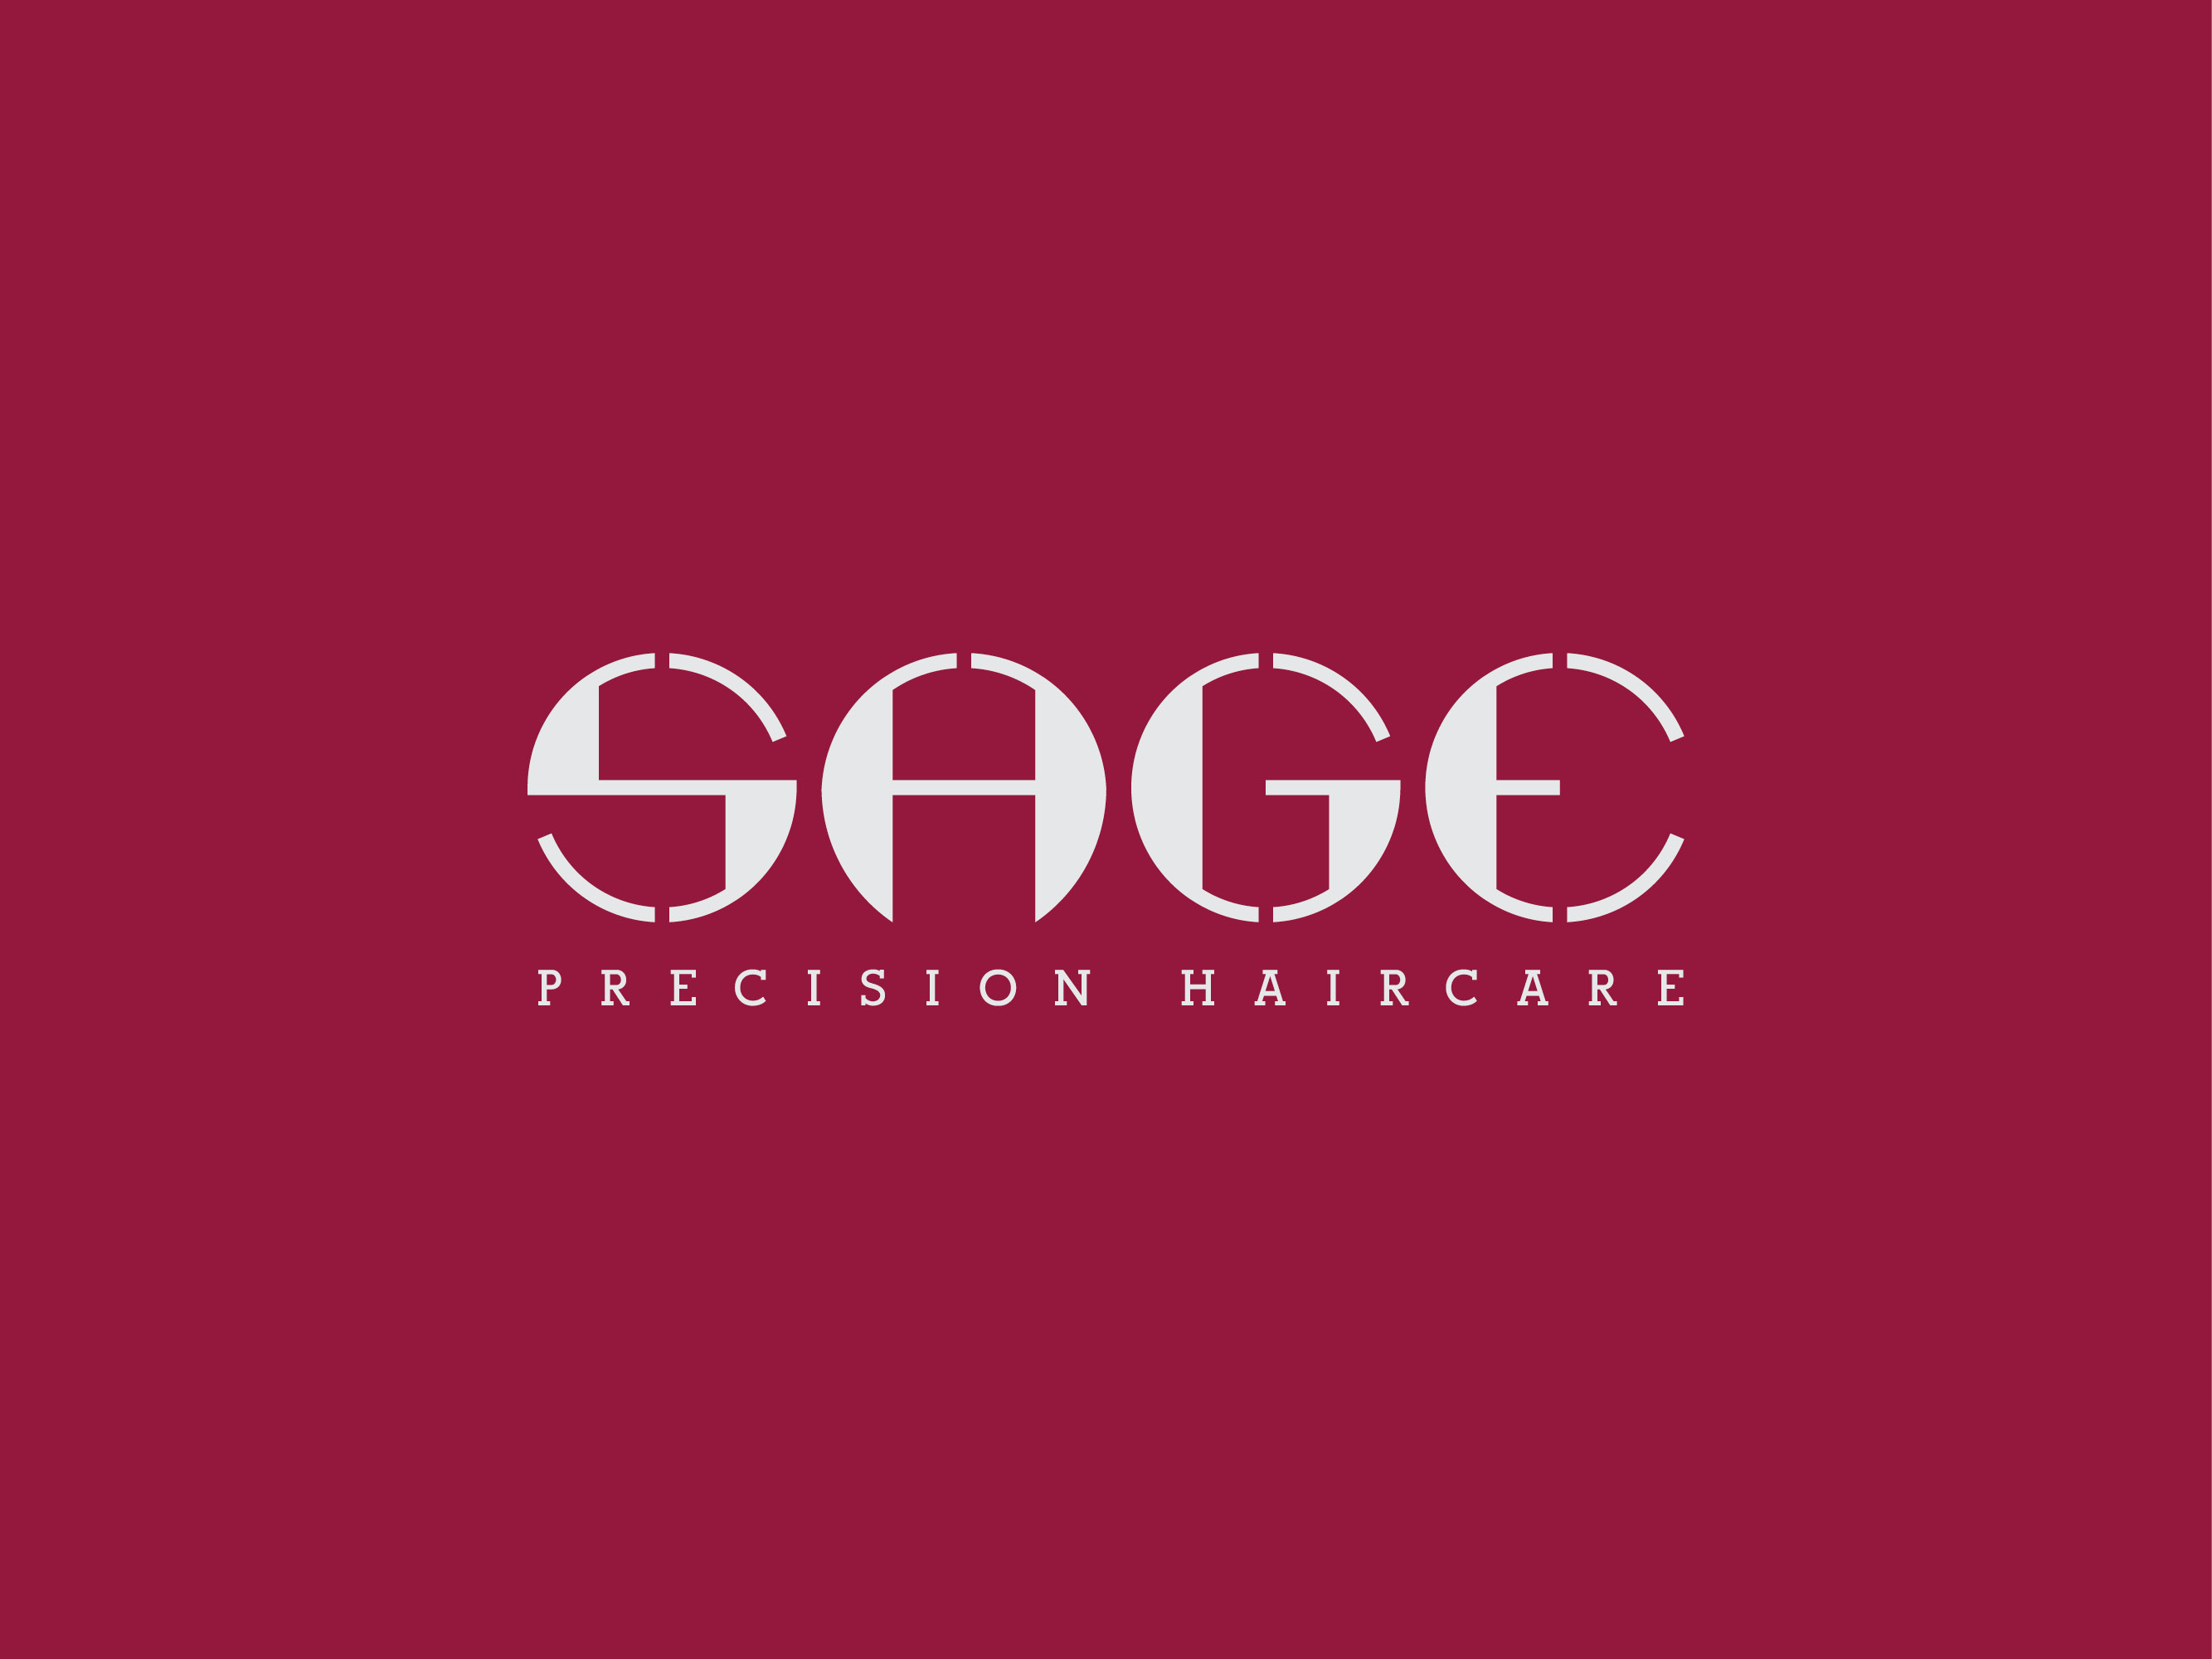 Sage precision haircare logo design